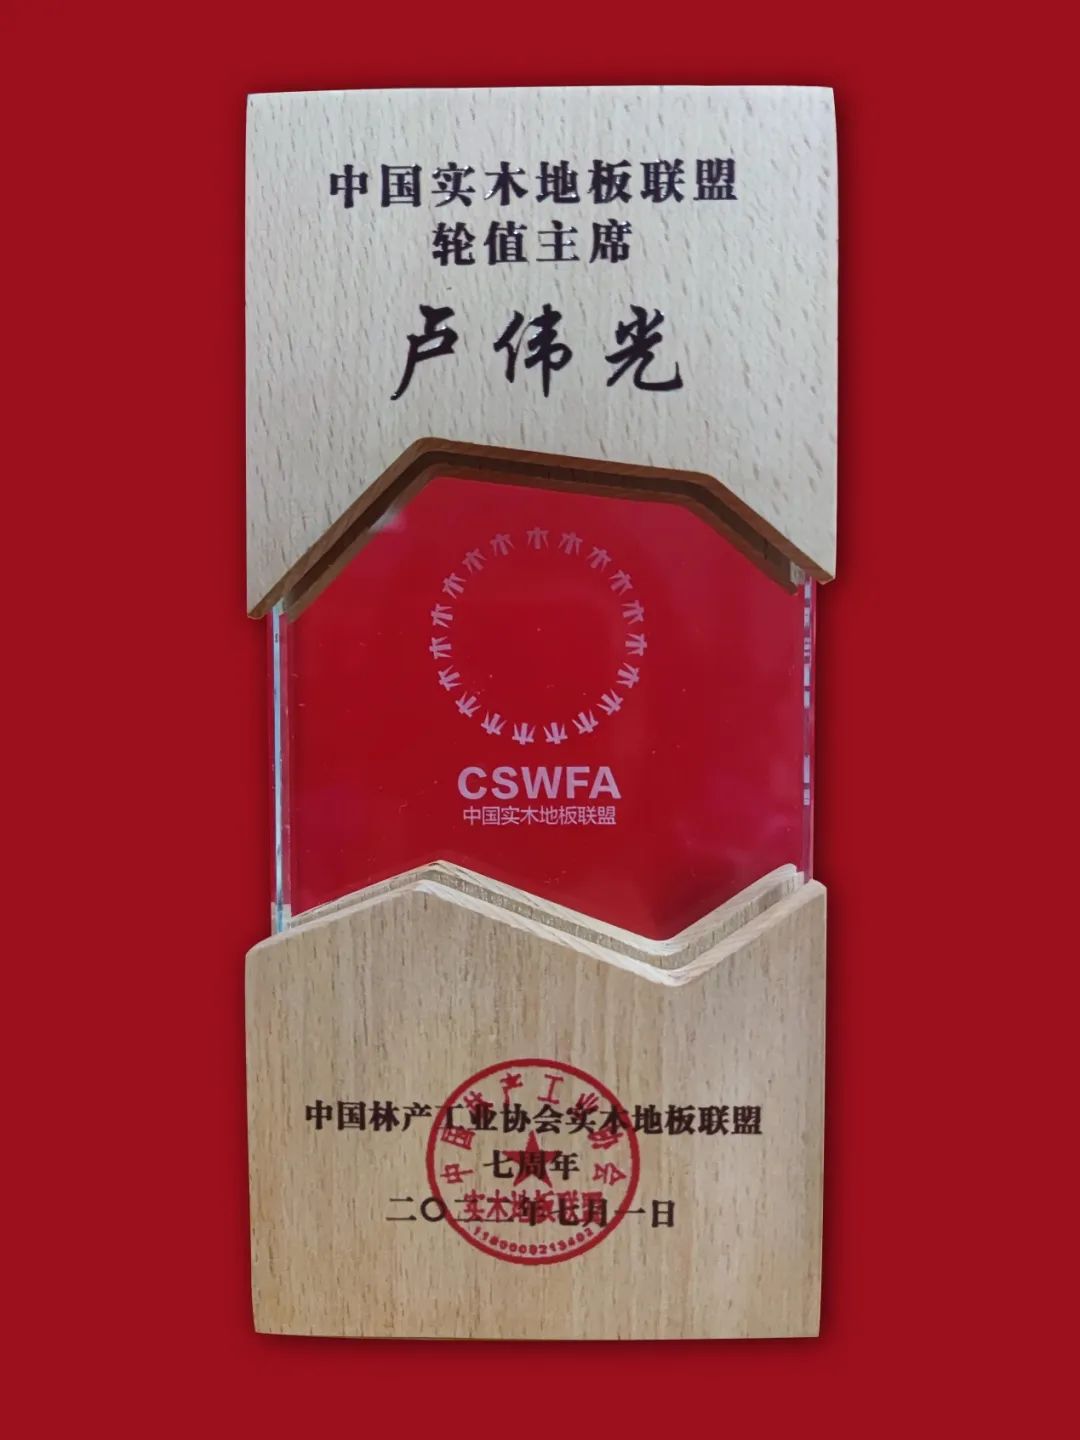 聚势谋新，王者归来！安信地板董事长卢伟光获颁“中国实木地板联盟轮值主席”殊荣